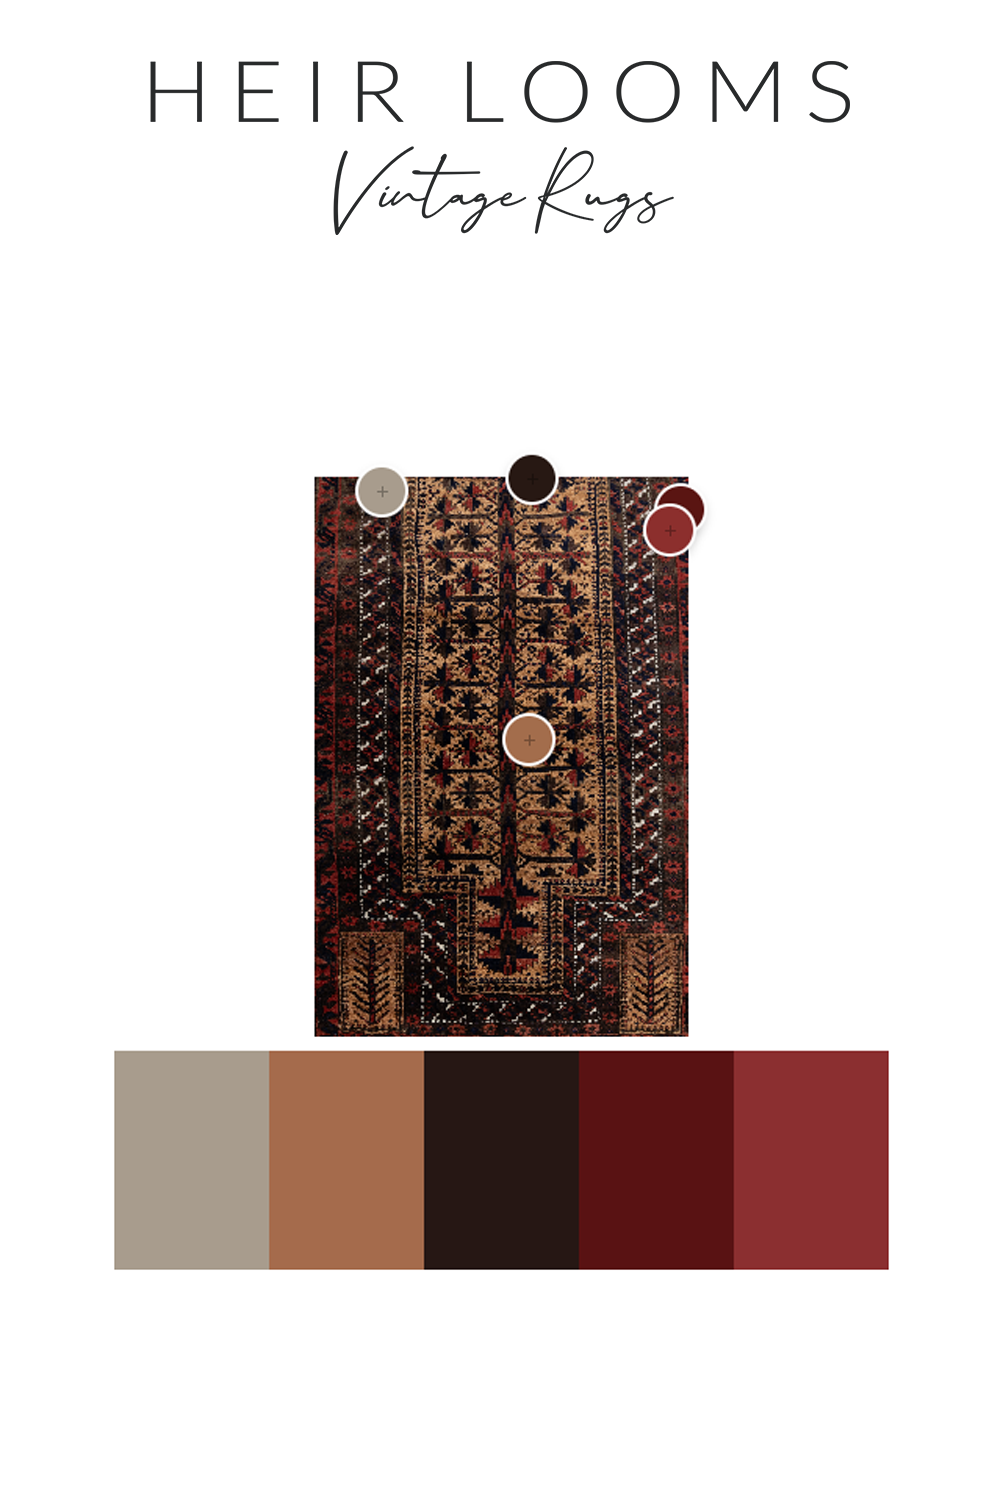 Antique Baluch Prayer Rug